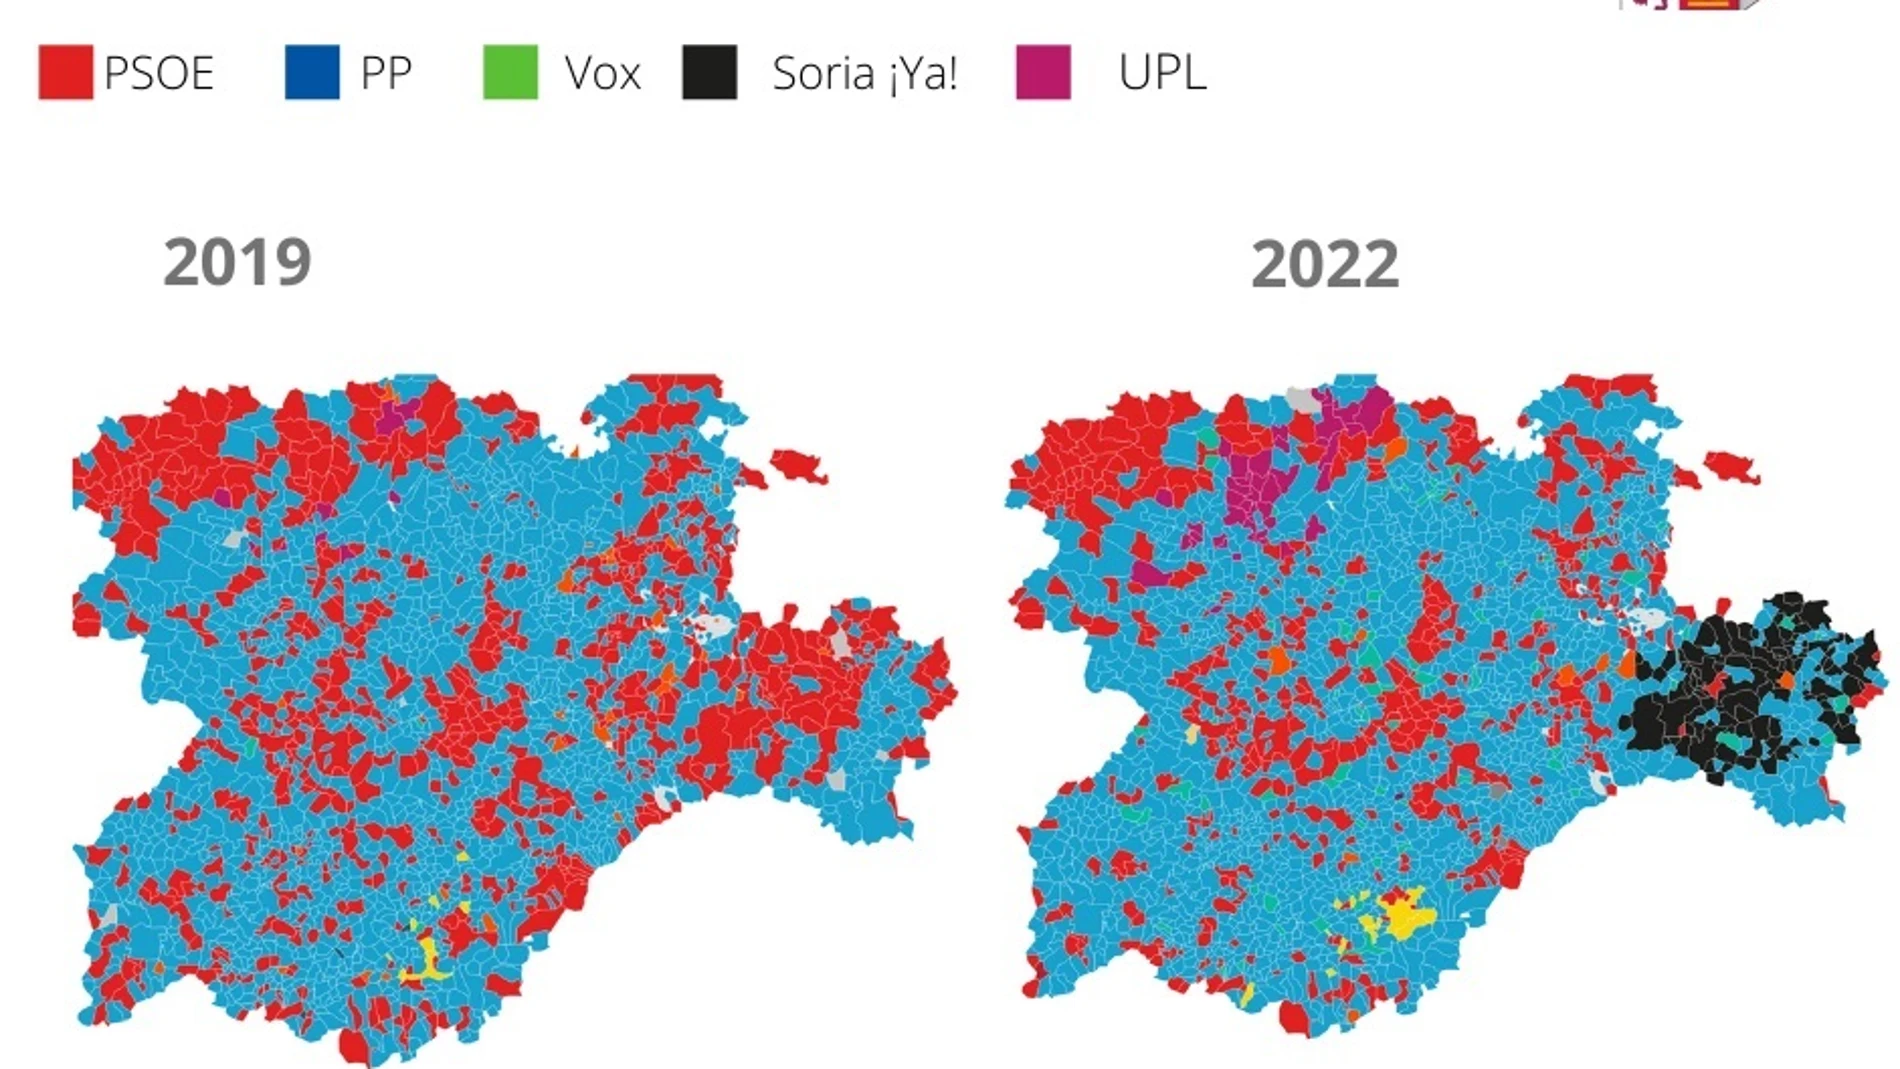 Elecciones en Castilla y León 2022, en gráficos